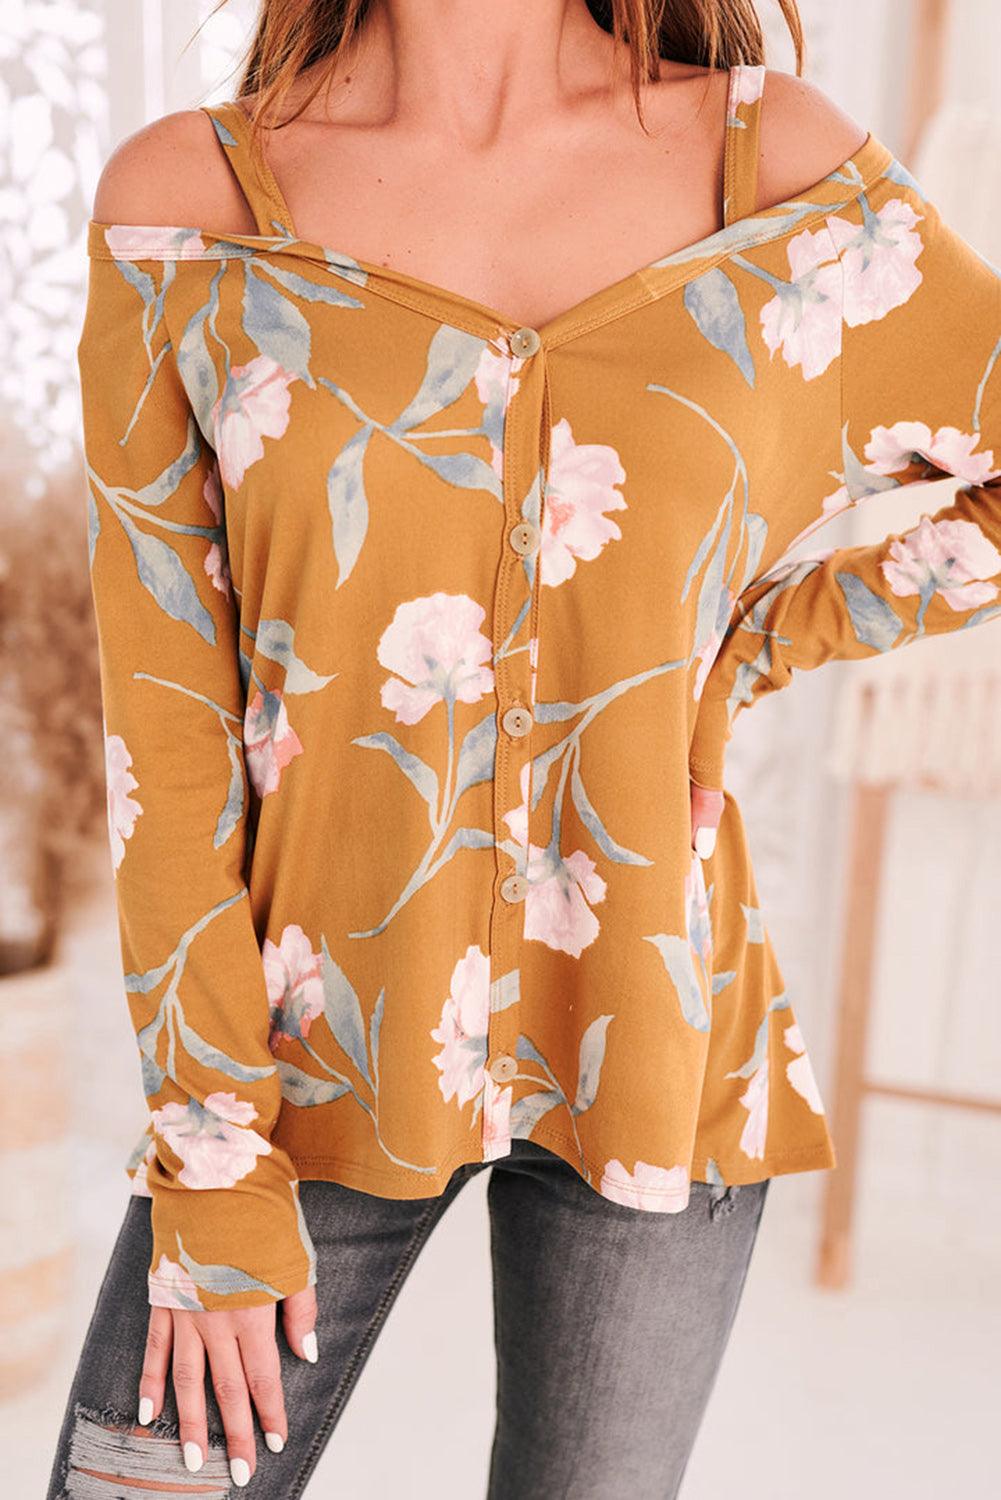 Cold Shoulder Long Sleeve Floral Top - L & M Kee, LLC